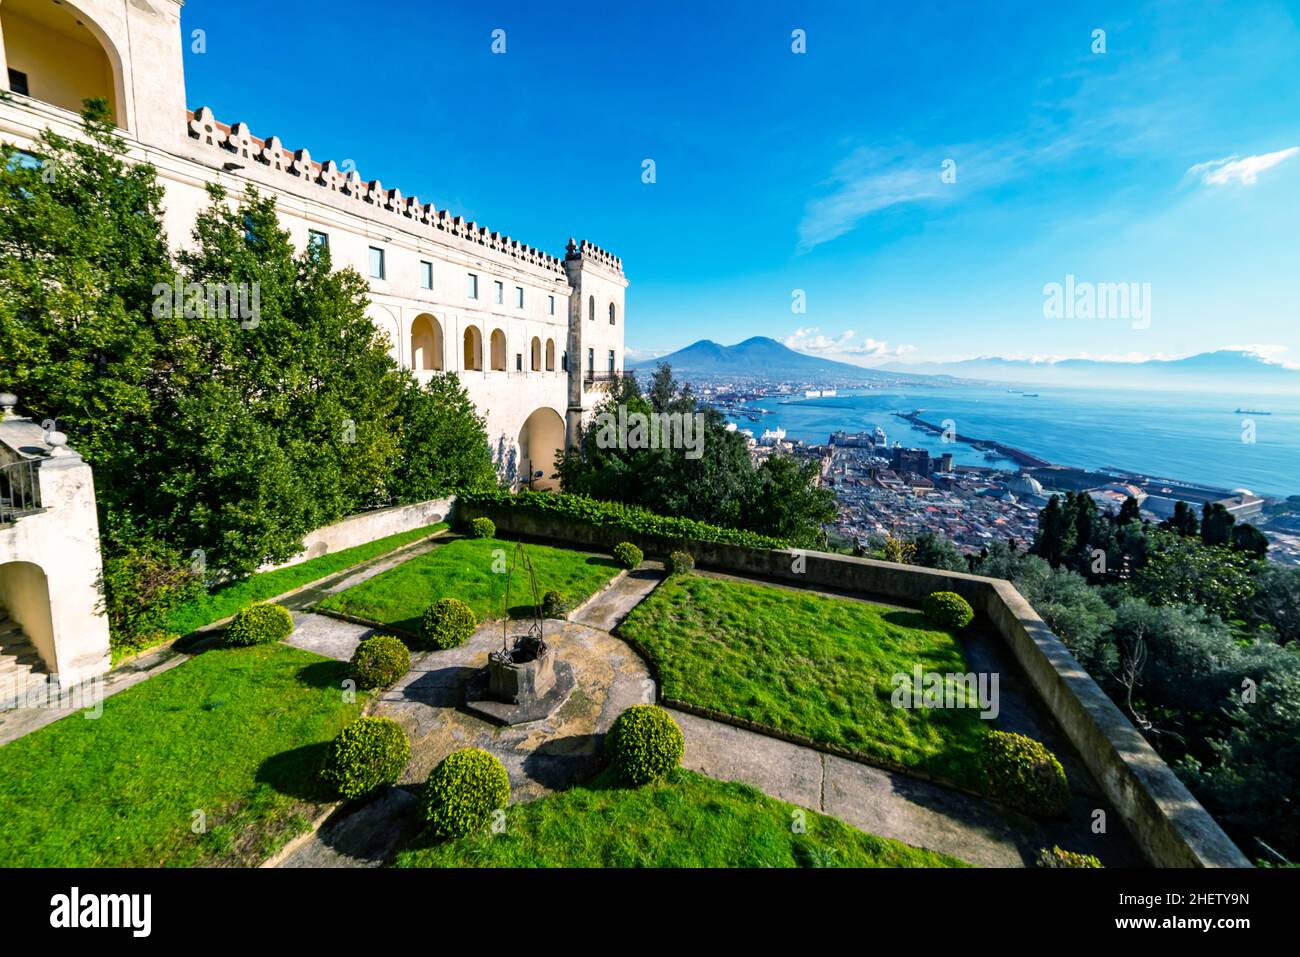 Veduta panoramica della città di Napoli Napoli con il famoso Vesuvio sullo sfondo del monastero di Certosa di San Martino, Campania, Italia Foto Stock